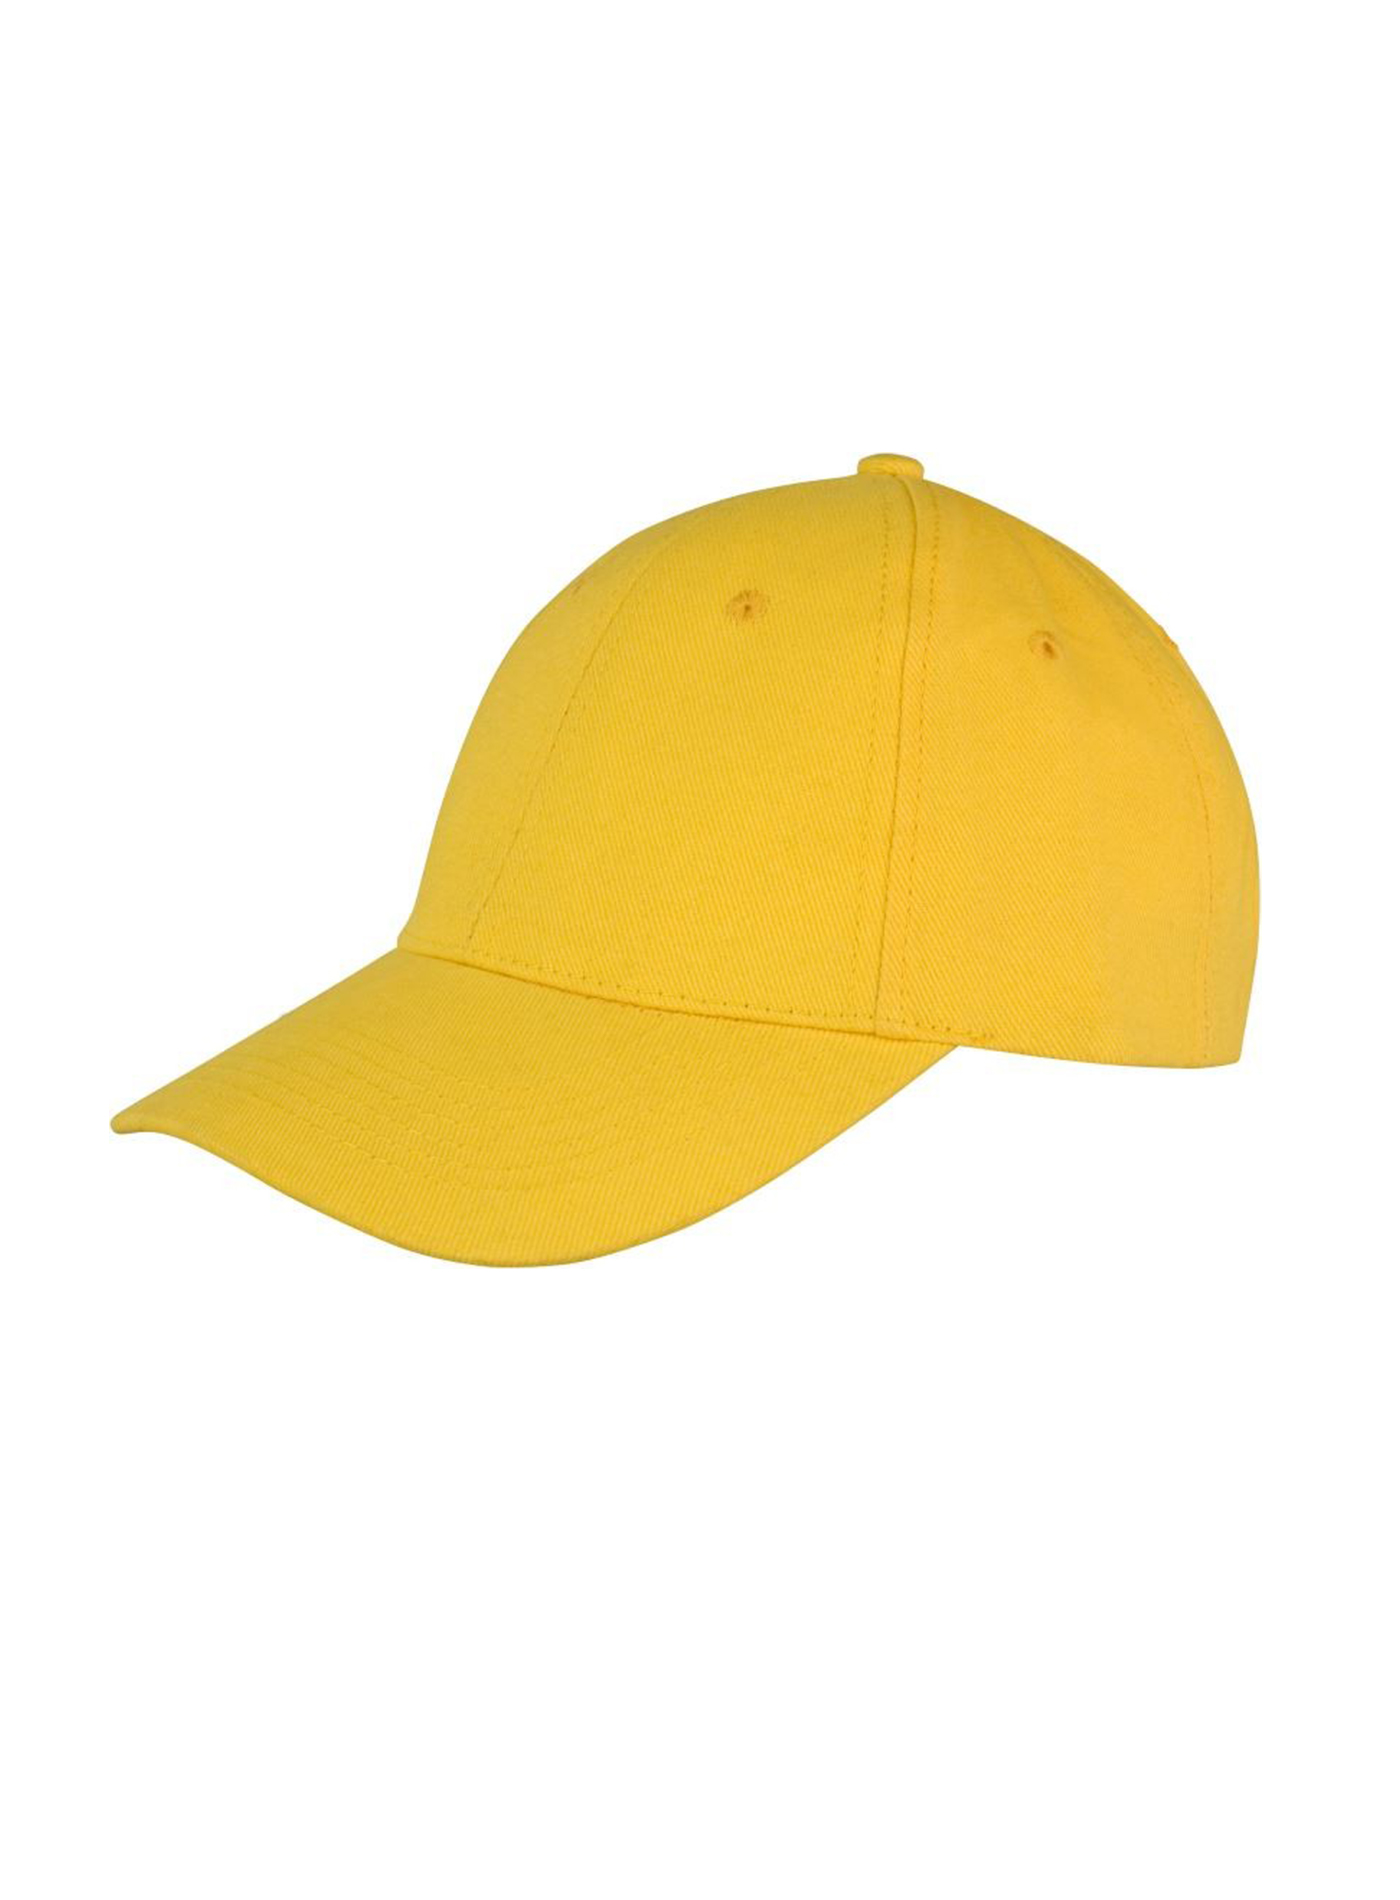 Kšiltovka Result headwear s nízkým profilem - Žlutá univerzal